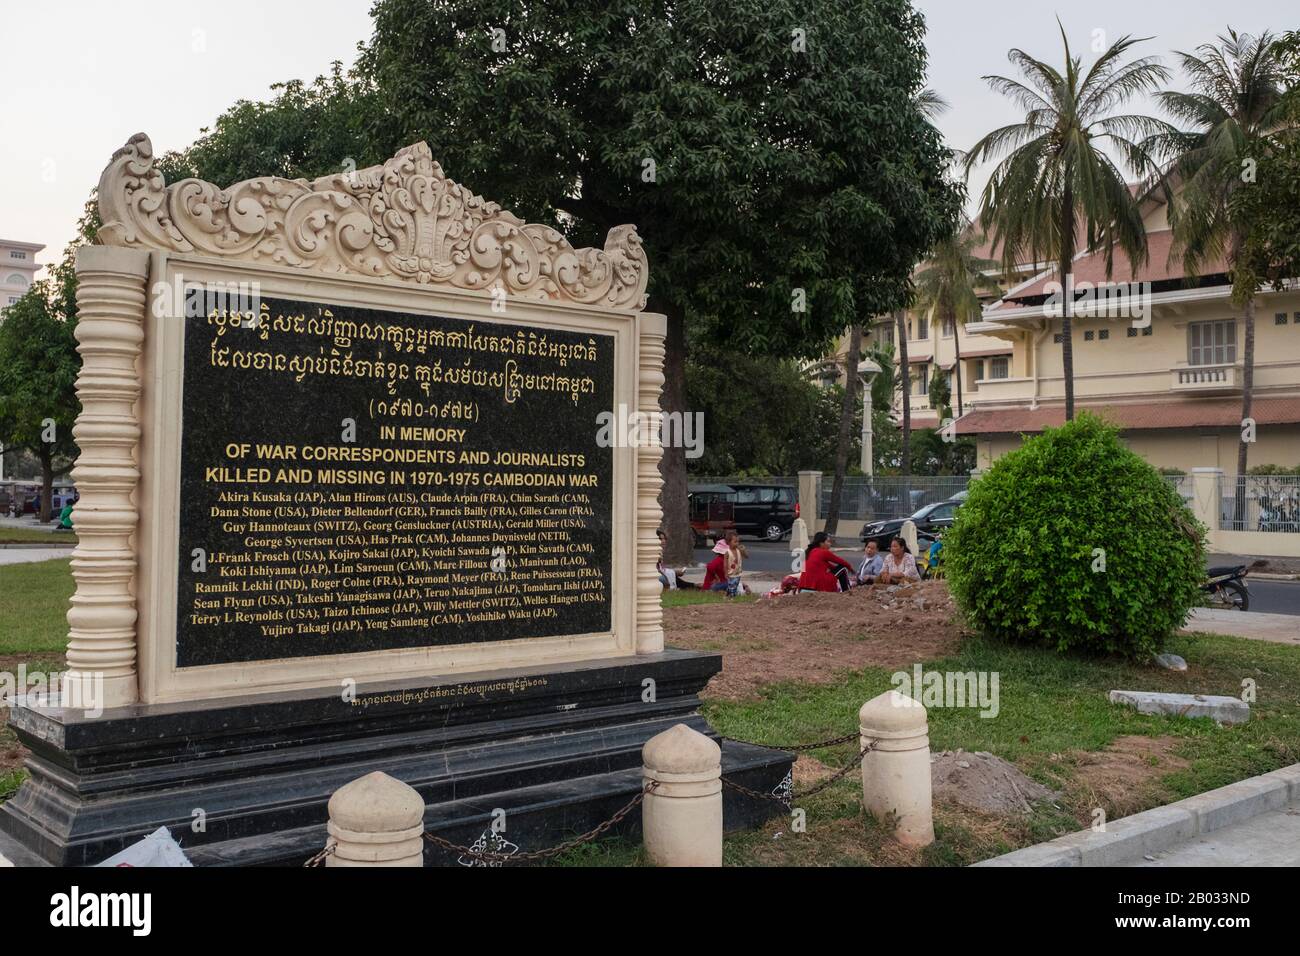 Die Khmer Rouge oder die Kommunistische Partei Kampucheas regierten von 1975 bis 1979 Kambodscha, angeführt von Pol Pot, Nuon Chea, Ieng Sary, Son Sen und Khieu Samphan. Man erinnert sich vor allem an seine Brutalität und Politik der Sozialtechnik, die Millionen von Toten zur Folge hatte. Seine Bemühungen um eine Agrarreform führten zu einer weit verbreiteten Hungersnot, während ihr Beharren auf absoluter Selbstversorgung, auch bei der Versorgung mit Medikamenten, zu Tausenden Todesfällen bei behandelbaren Krankheiten (wie Malaria) führte. Brutale und willkürliche Hinrichtungen und Folter, die von seinen Kadern gegen gefühlte subversive Elemente oder Duri durchgeführt wurden Stockfoto